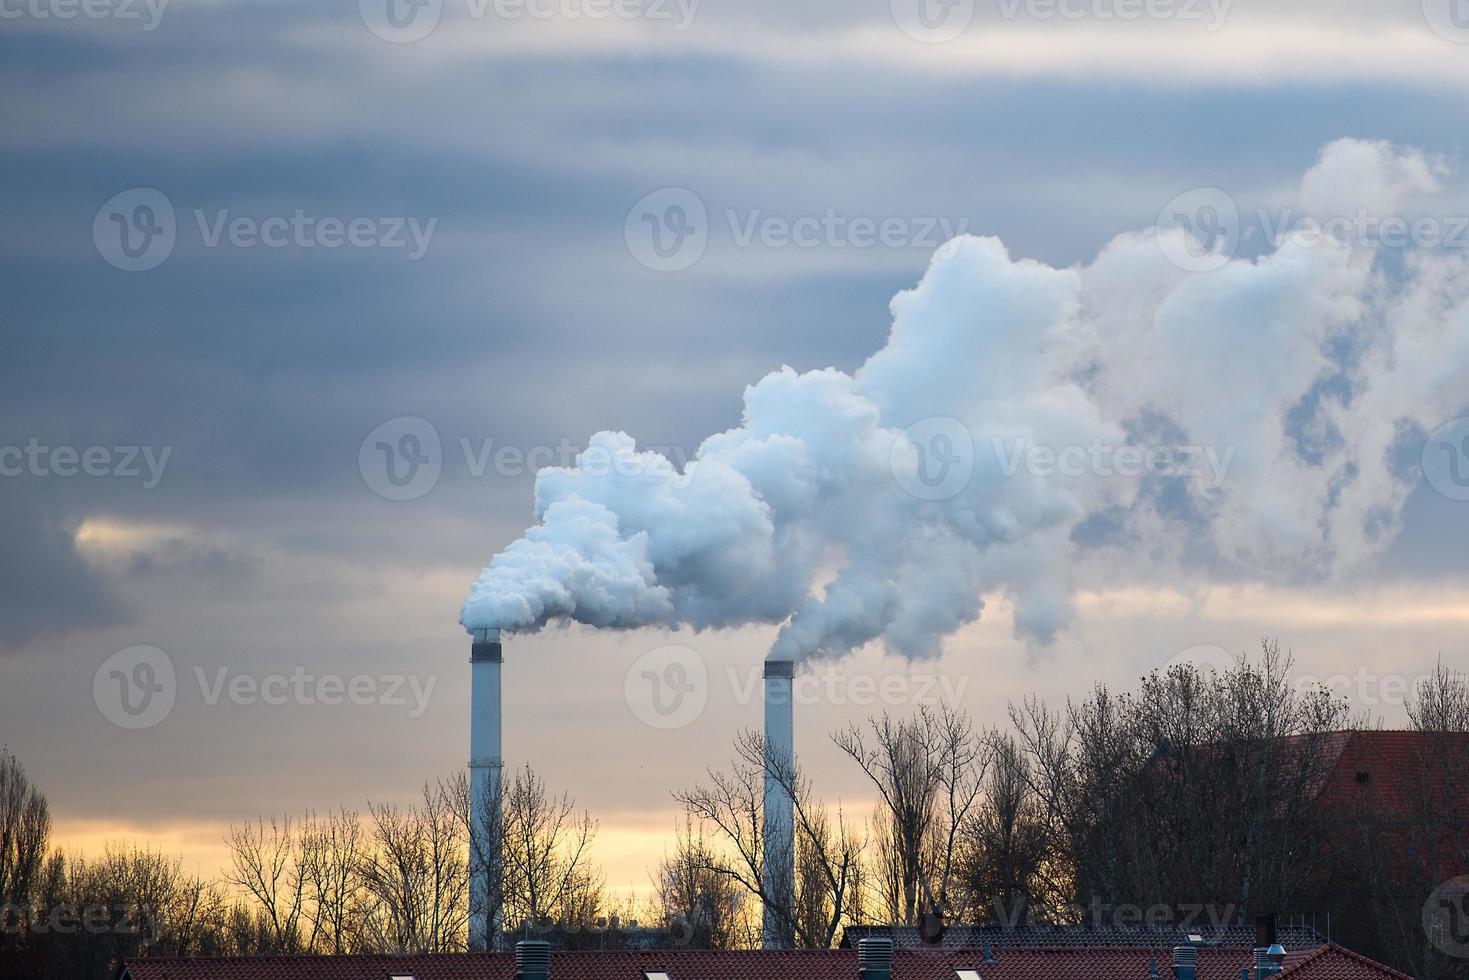 rökskorstenar med förorenande utsläpp foto